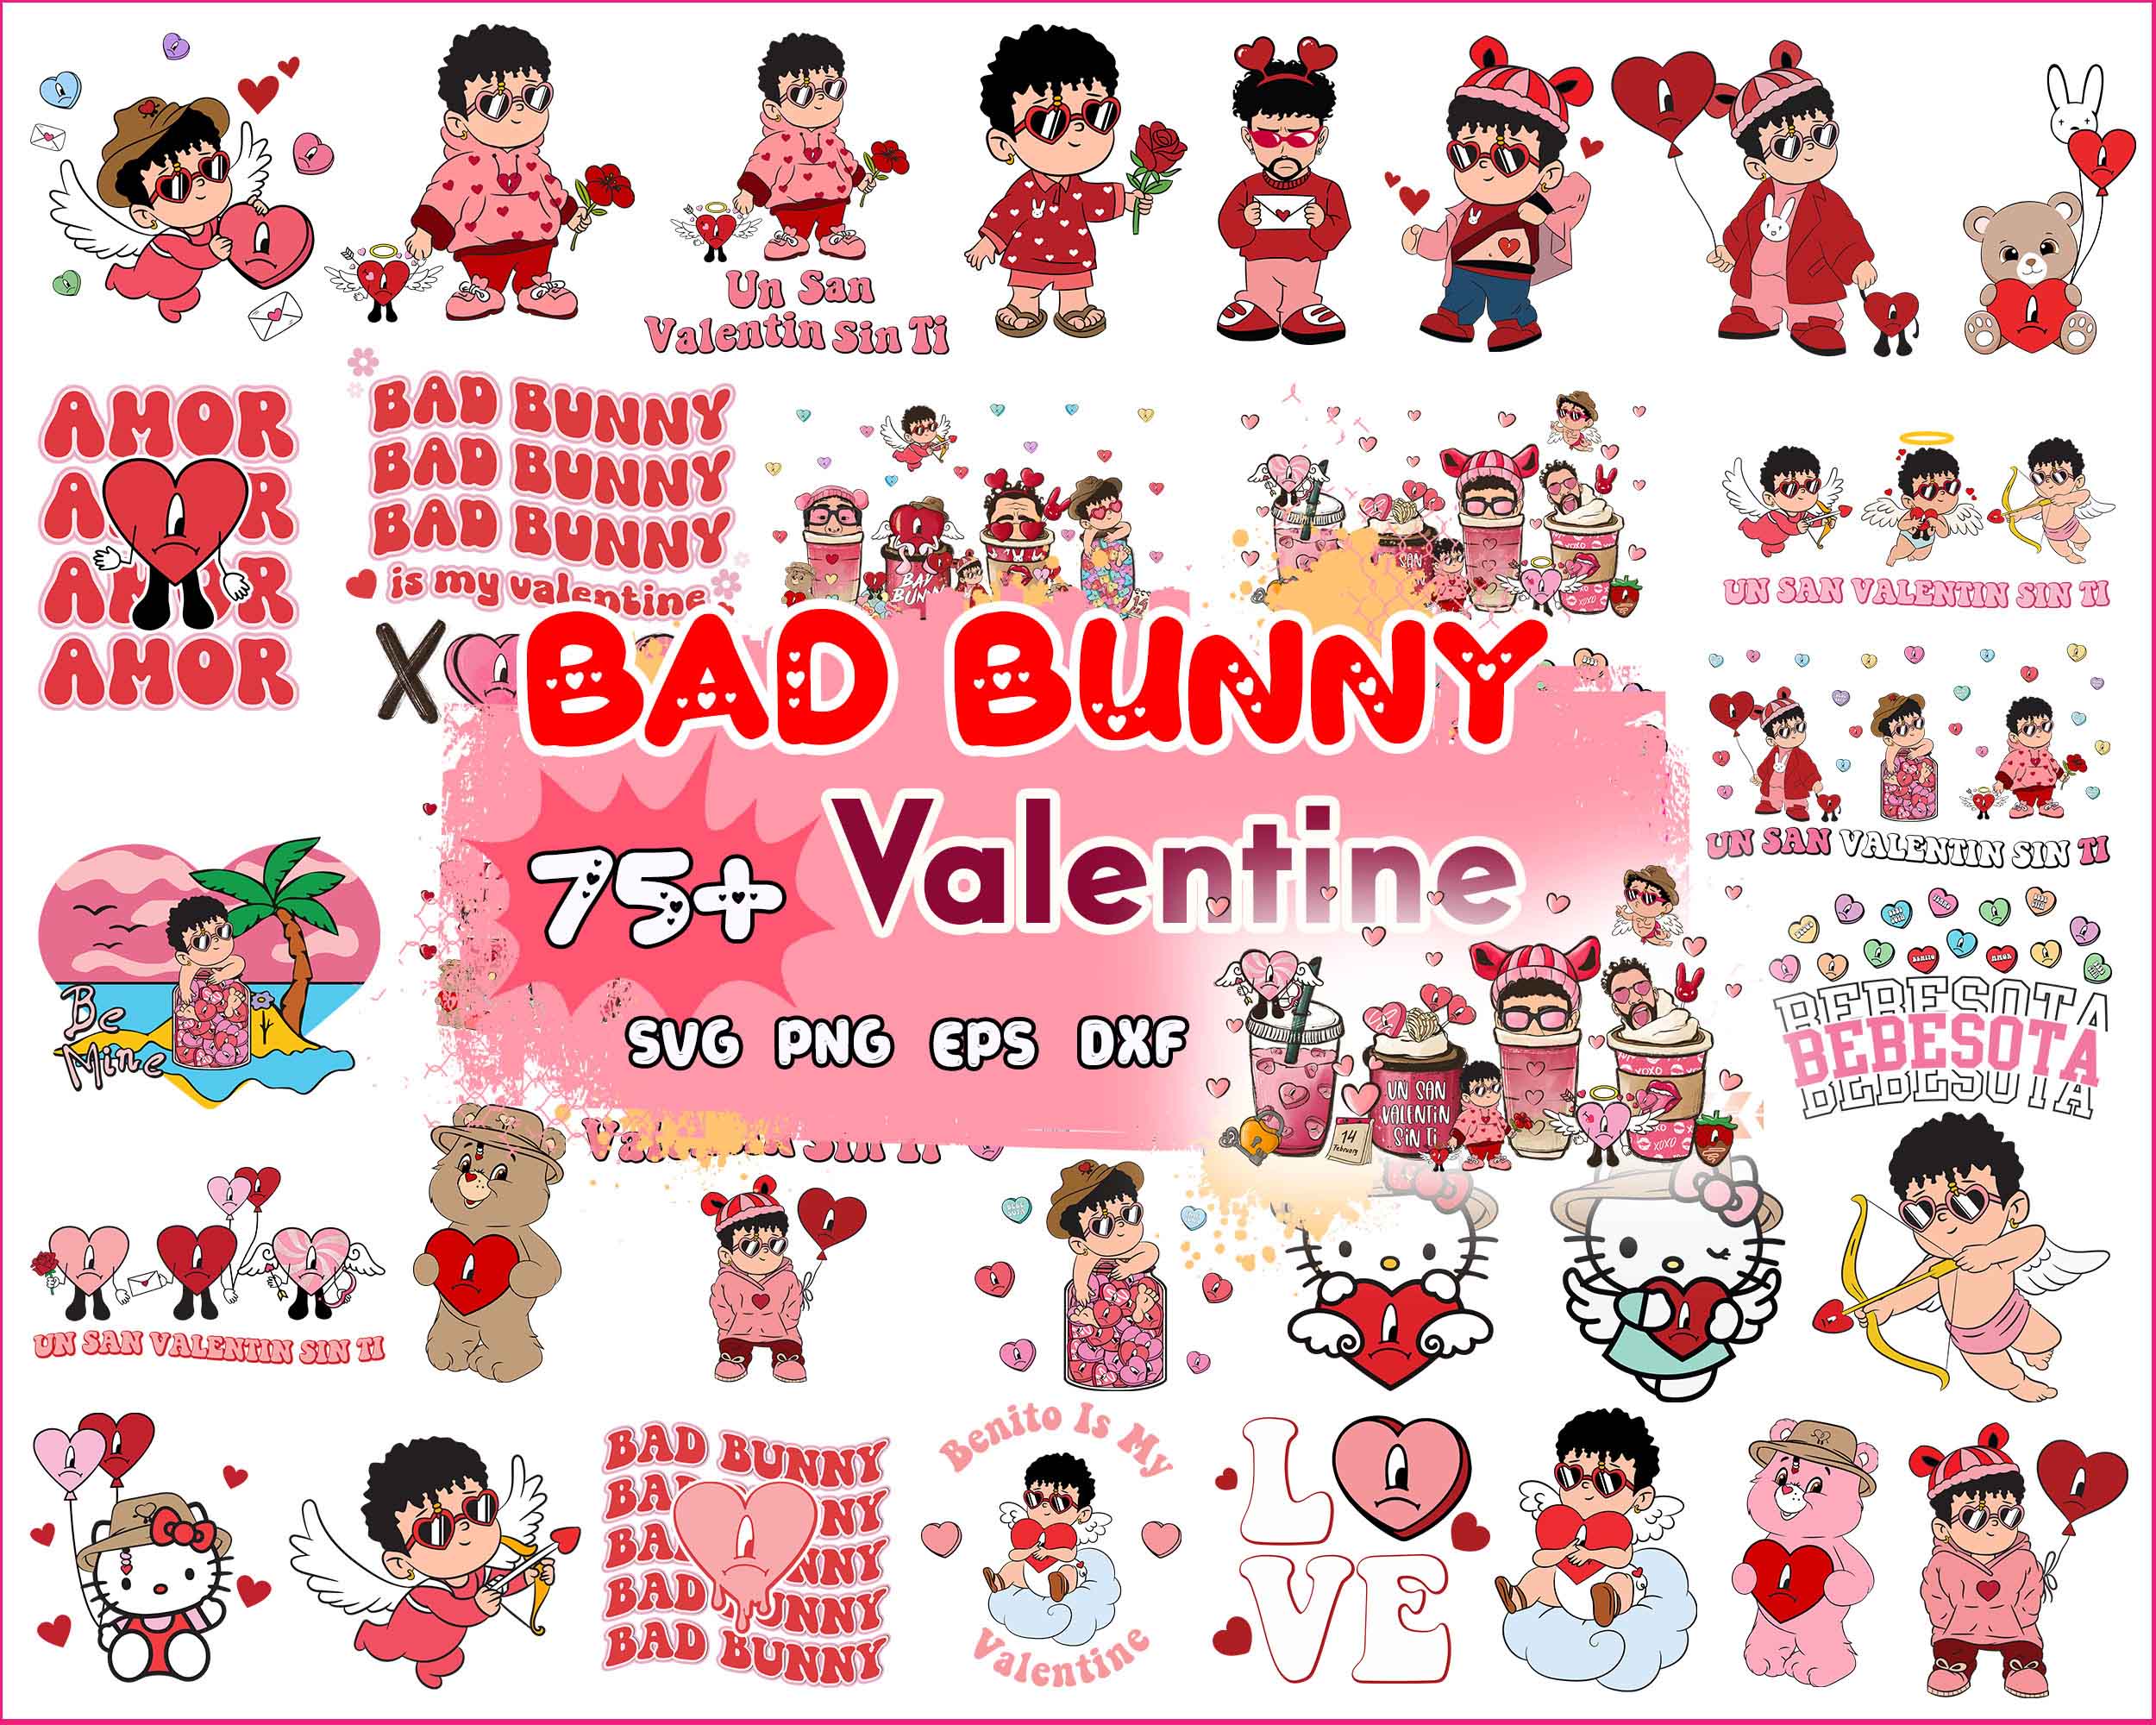 Version 2.0 - 75+ Bad bunny Valentines bundle, Valentine SVG PNG, eps dxf Design - Digital Download